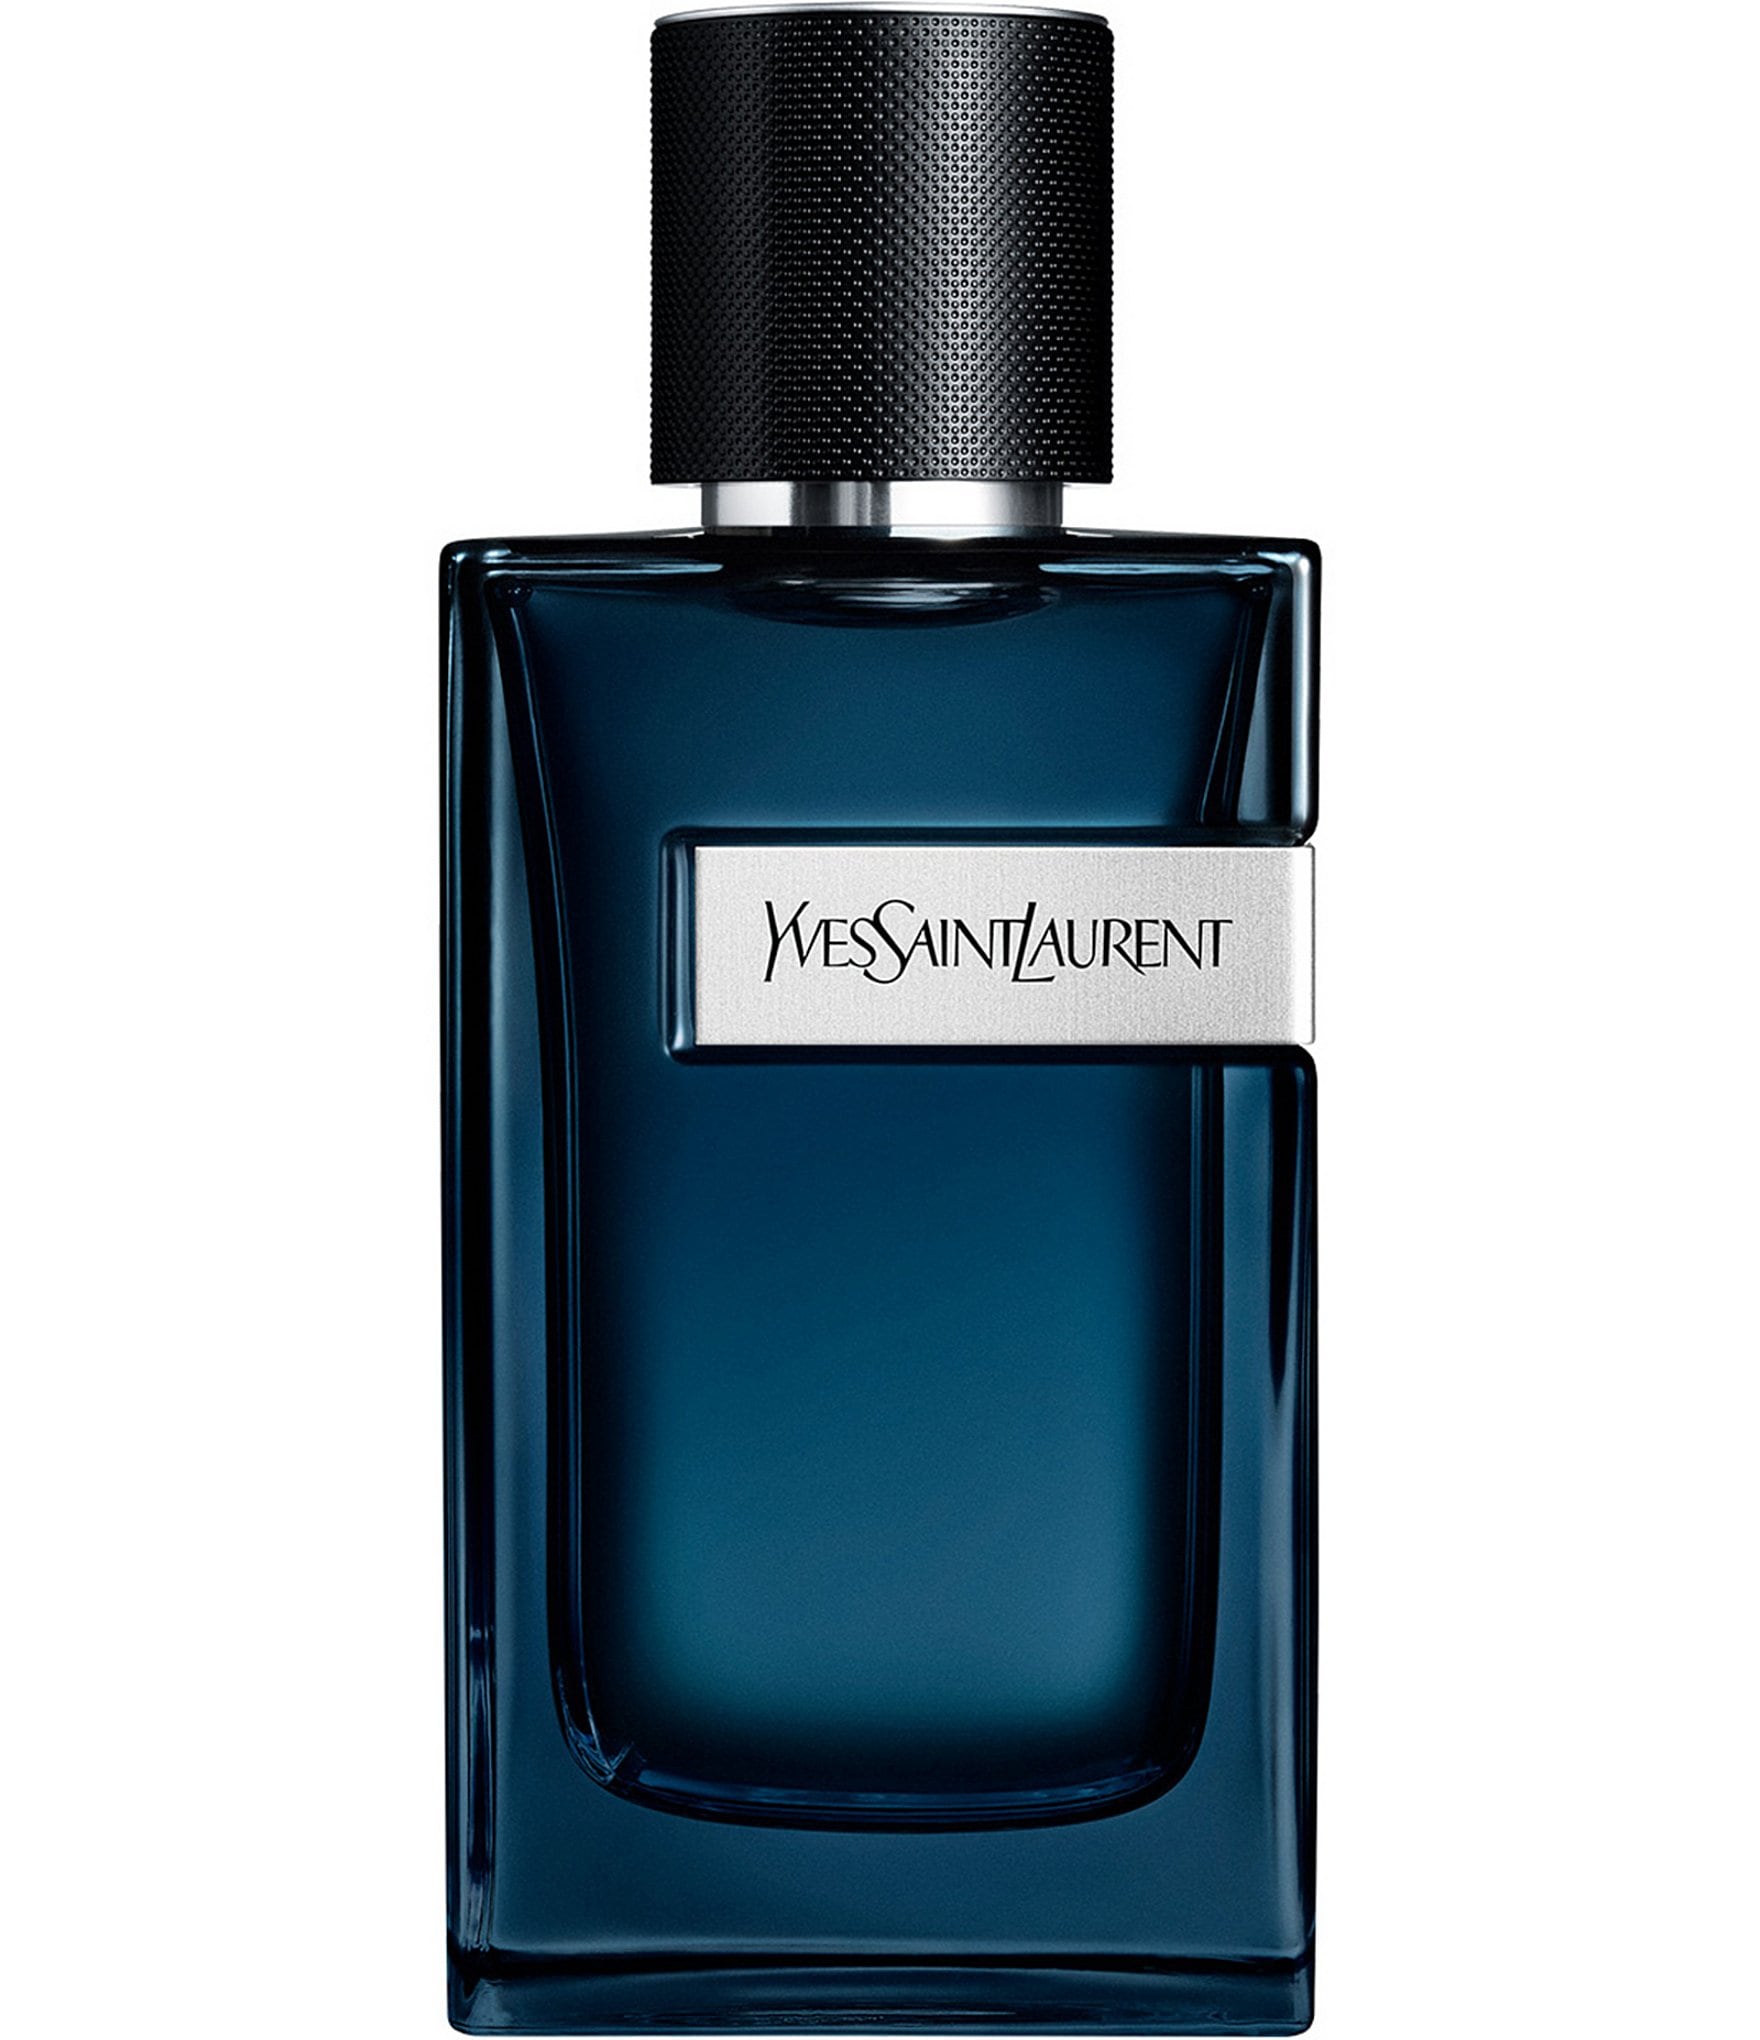 Yves Saint Laurent Y Eau de Parfum Intense - 100 ml